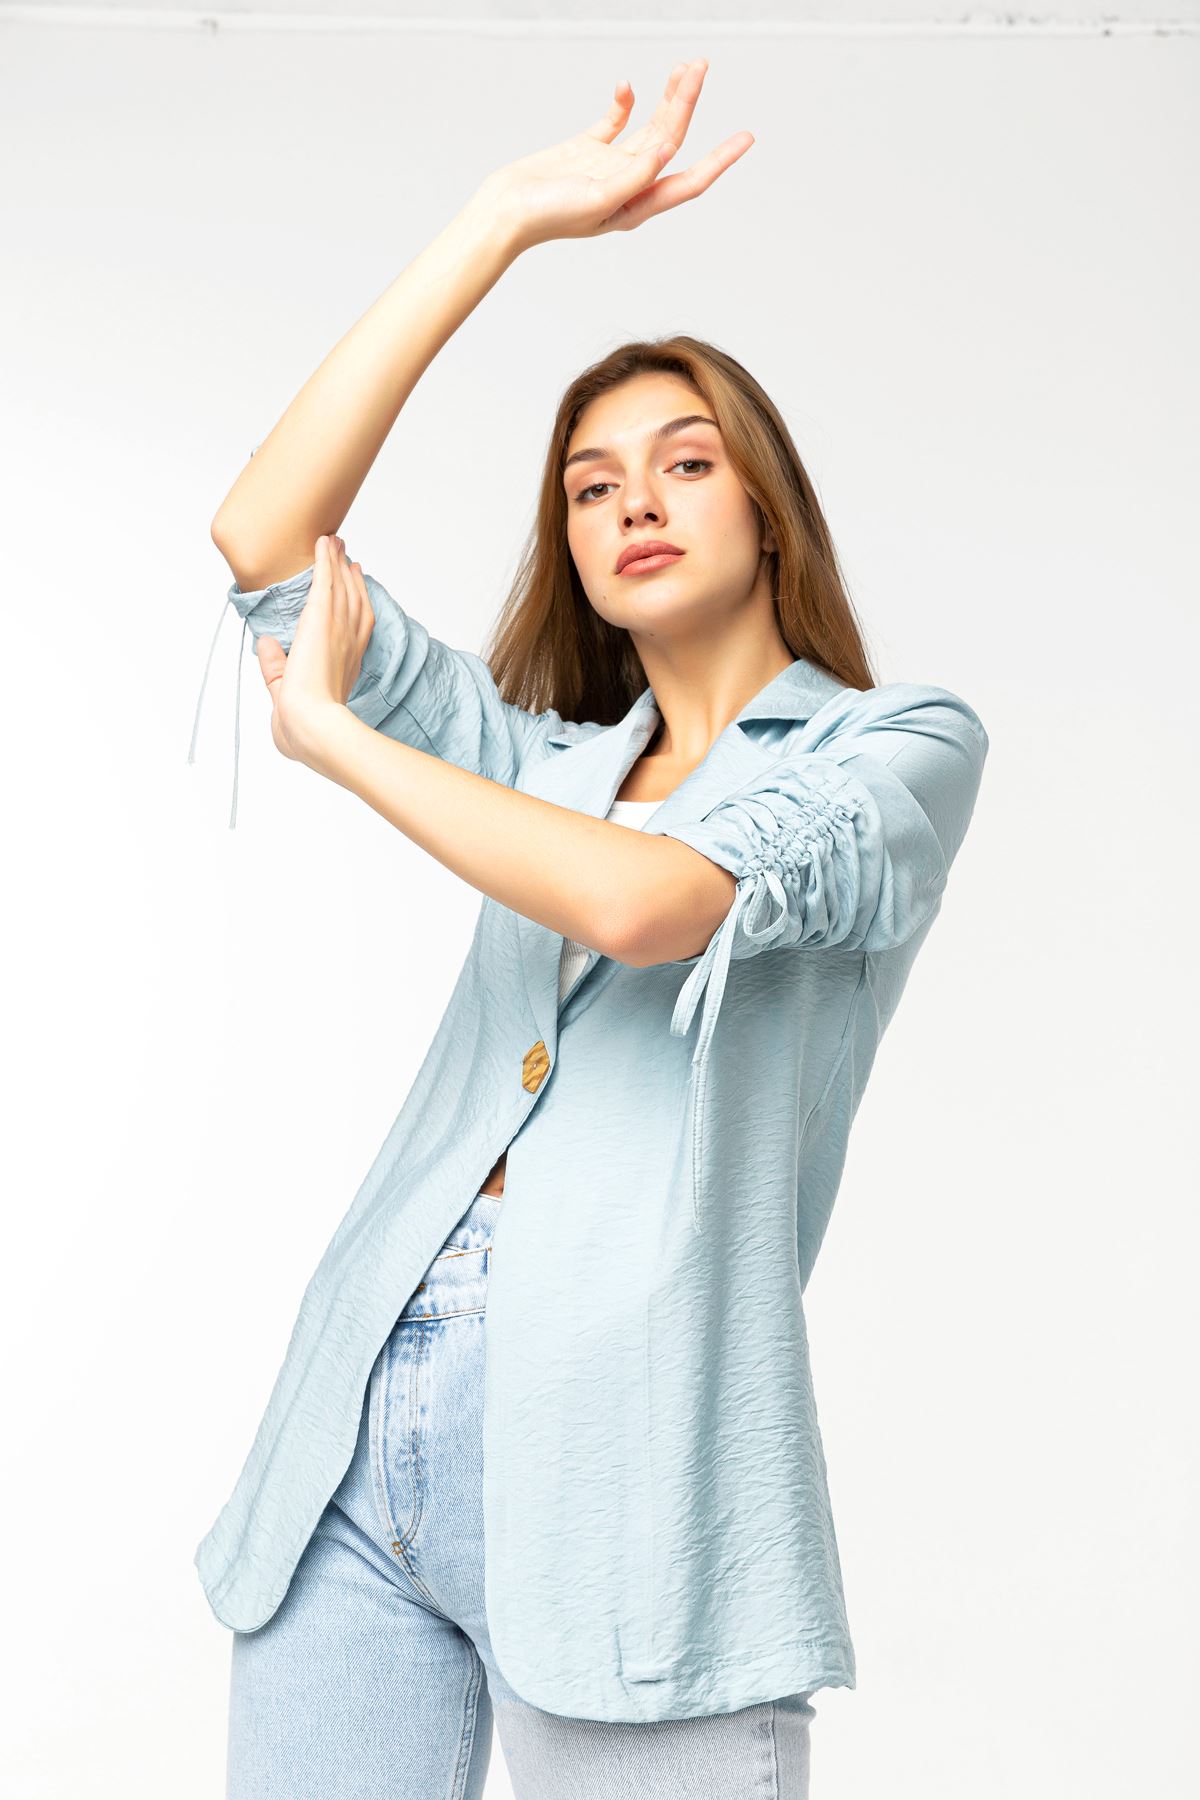 Aerobin Fabric Revere Collar Hip Height Comfy Women Jacket - Light Blue